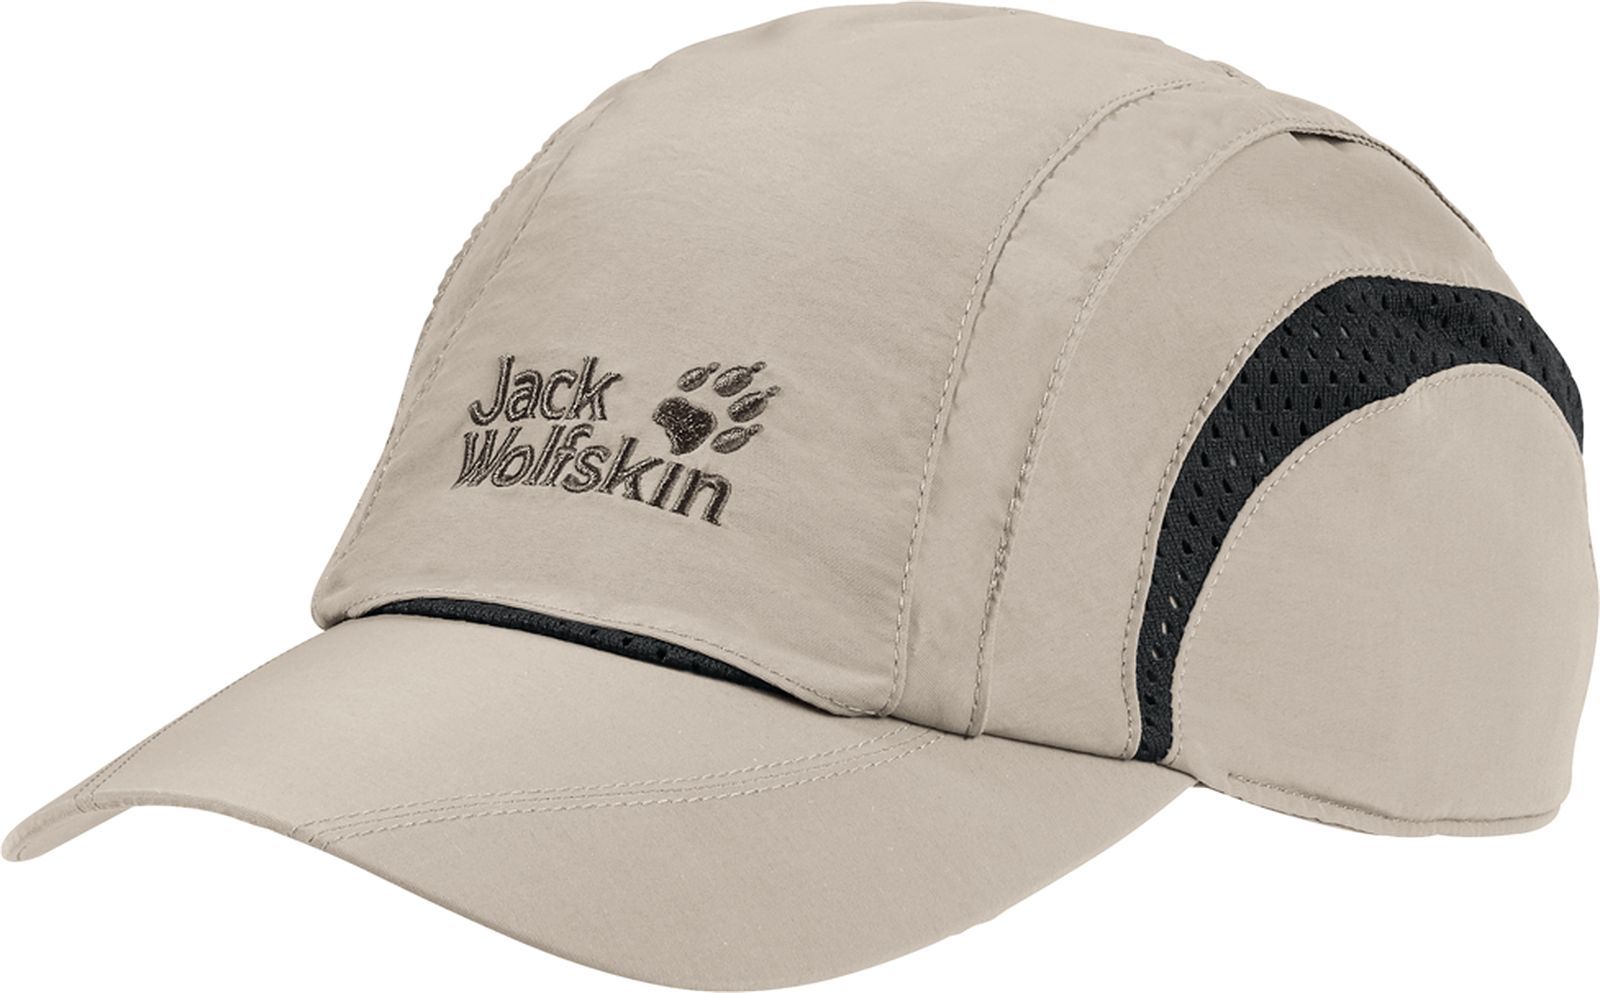  Jack Wolfskin Vent Pro Cap, : . 19222-5505.  M (54/57)